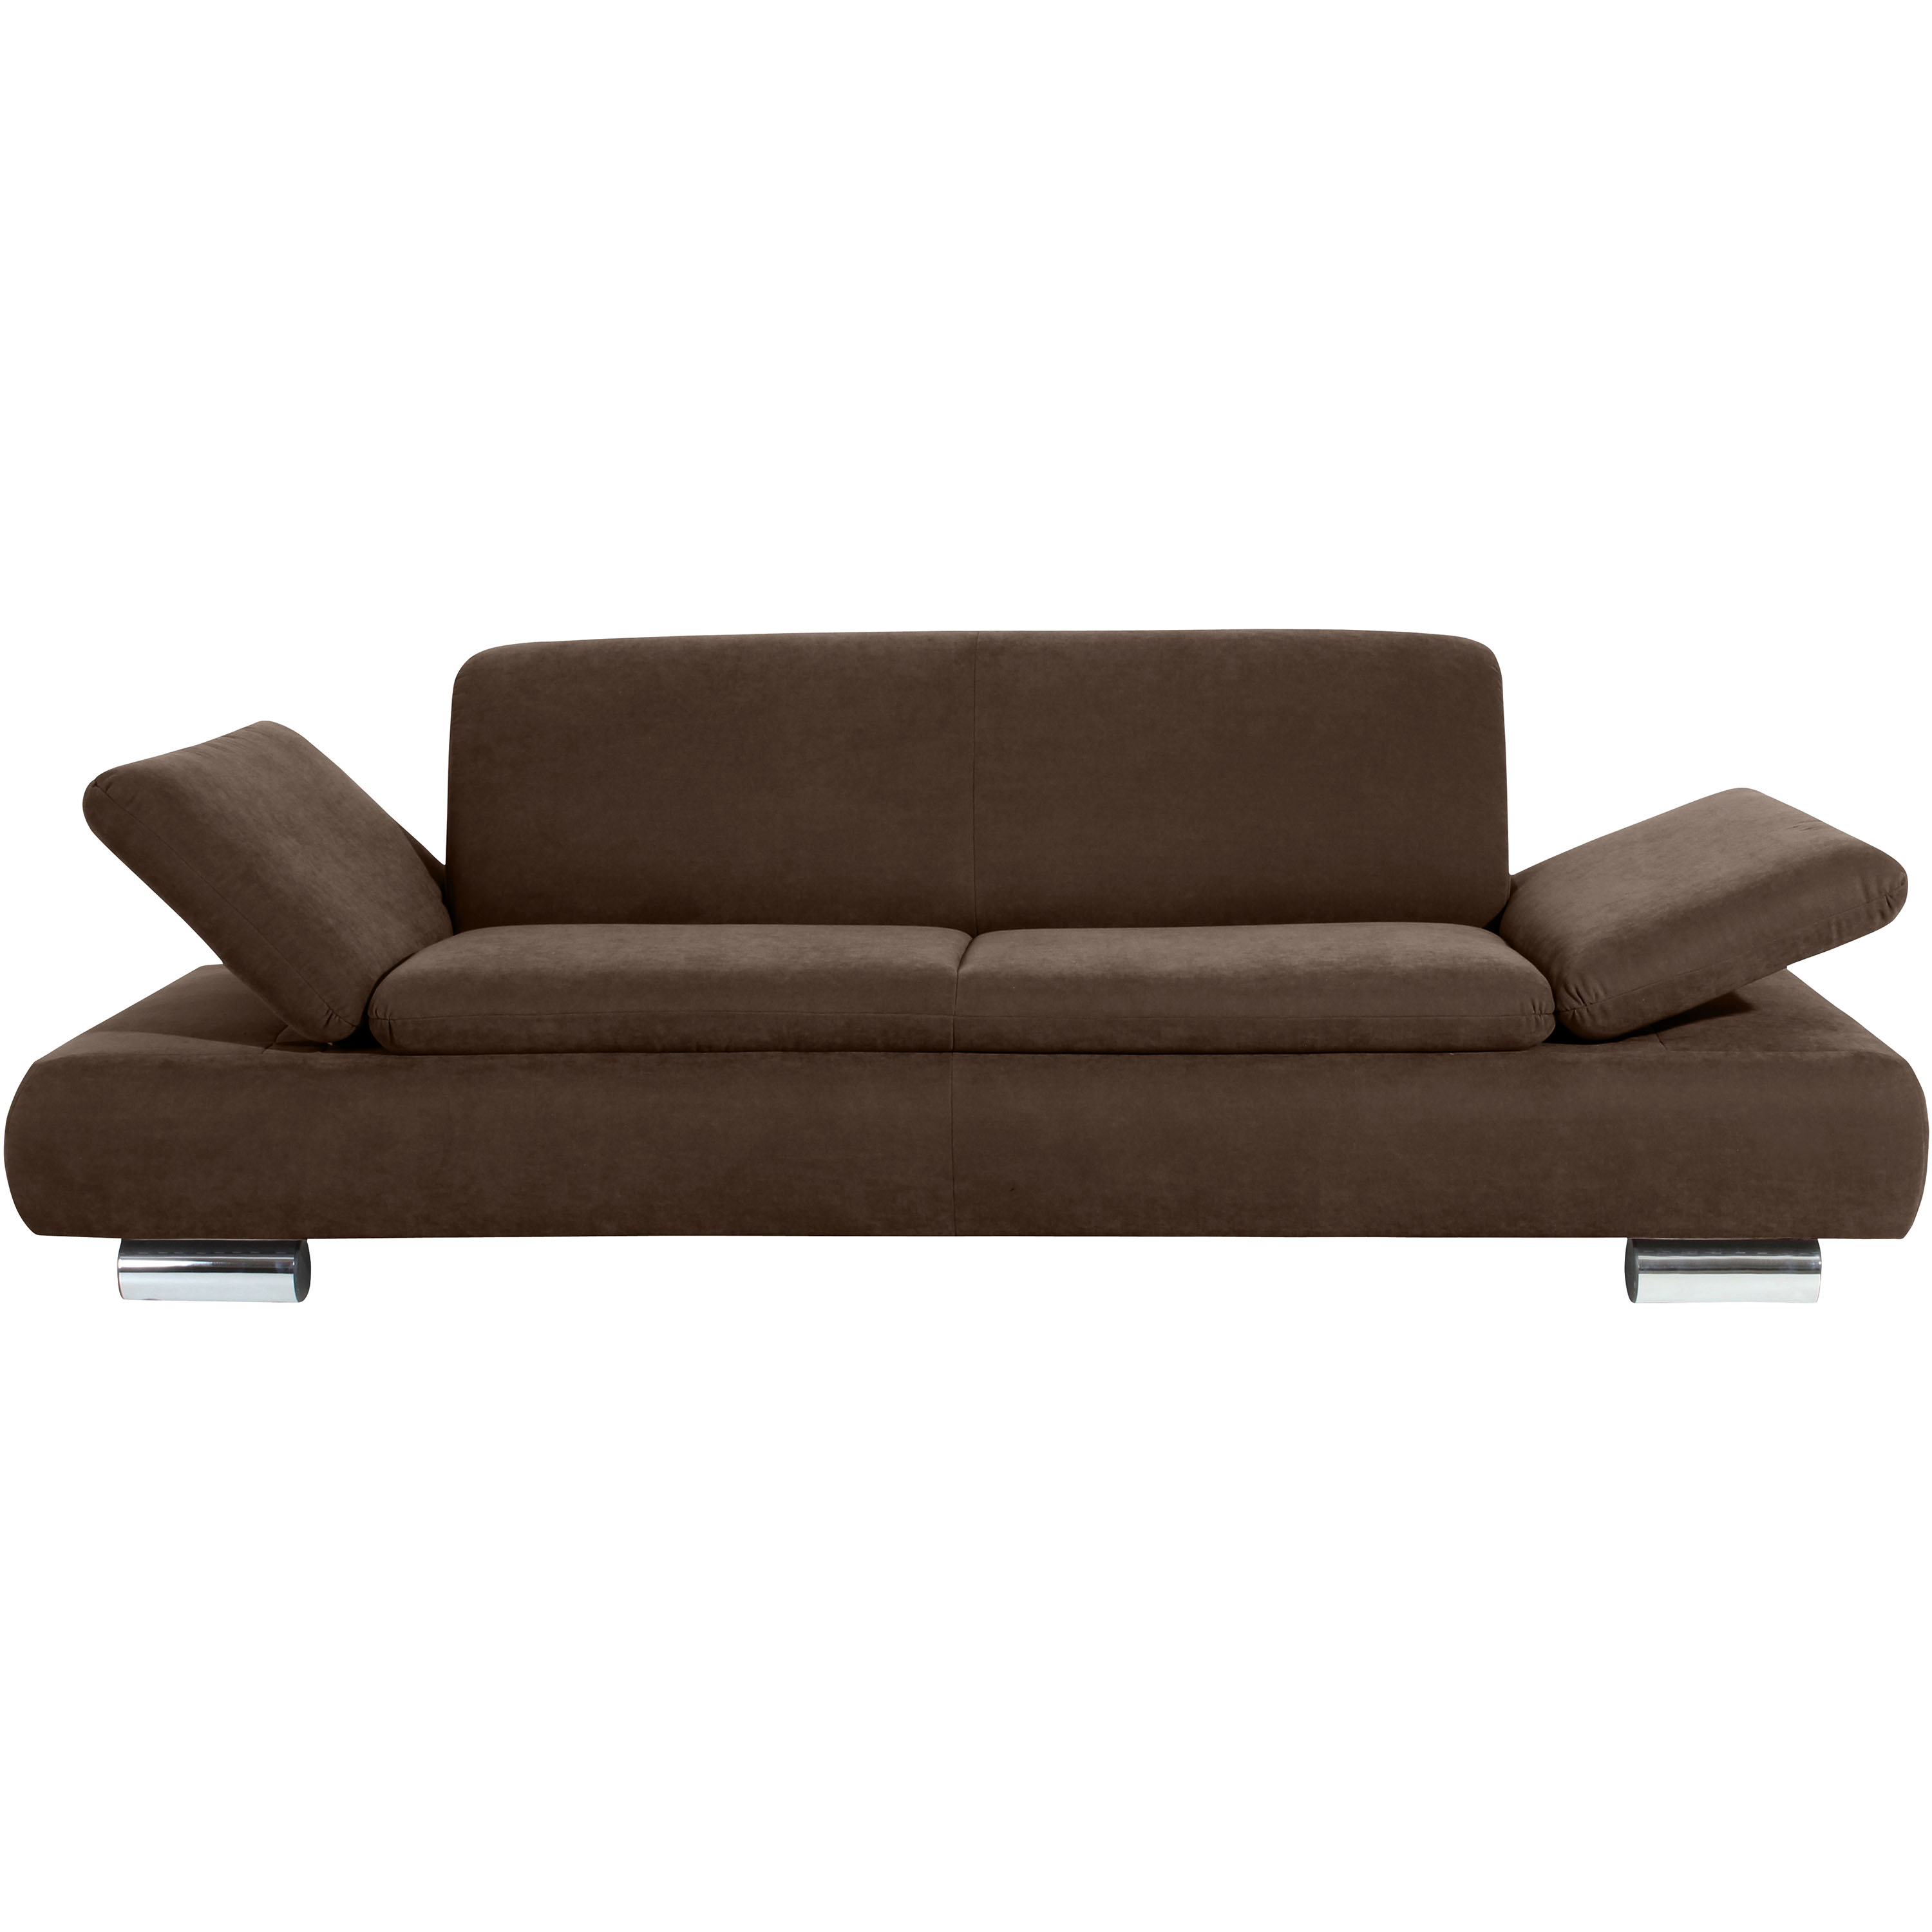 gemütlcihes 2,5-sitzer sofa mit hochgeklappten armteilen und verchromten metallfüssen